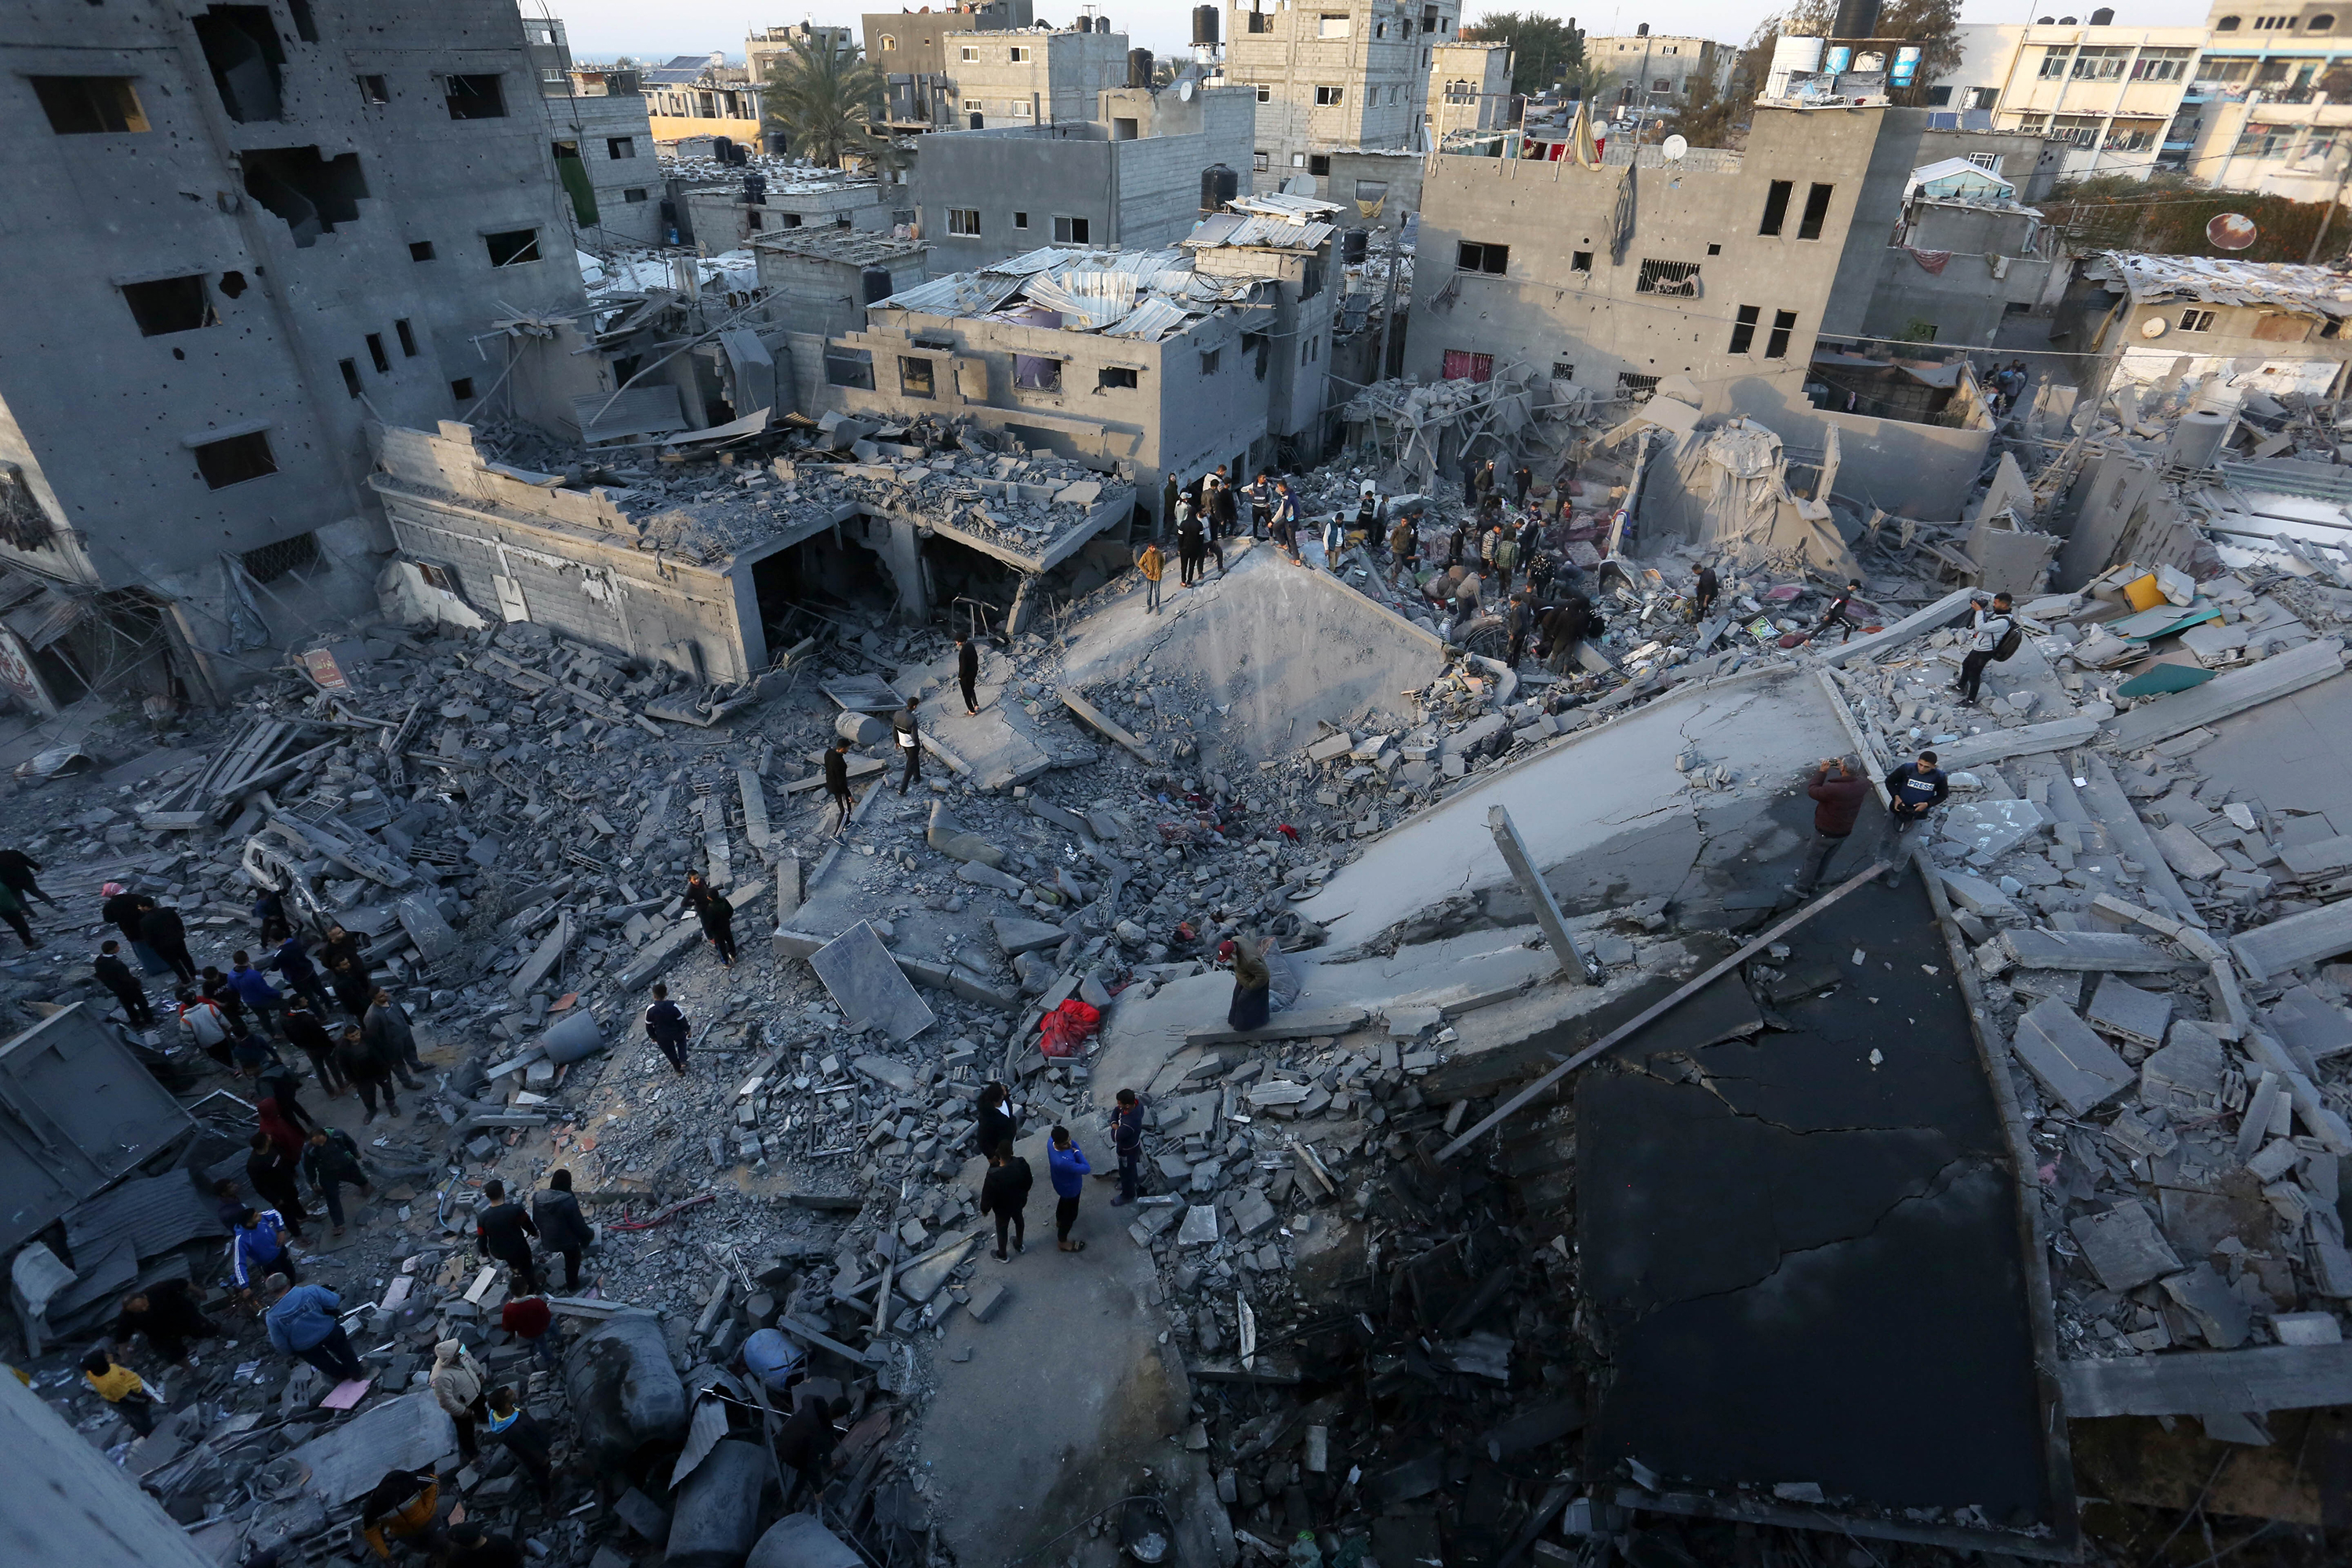 תושבים עורכים מבצע חיפוש והצלה בהריסות מבנים שנהרסו לאחר התקפות ישראליות במחנה הפליטים אל-נוסייראת בדיר אל-בלח בעזה ב-28 בפברואר.